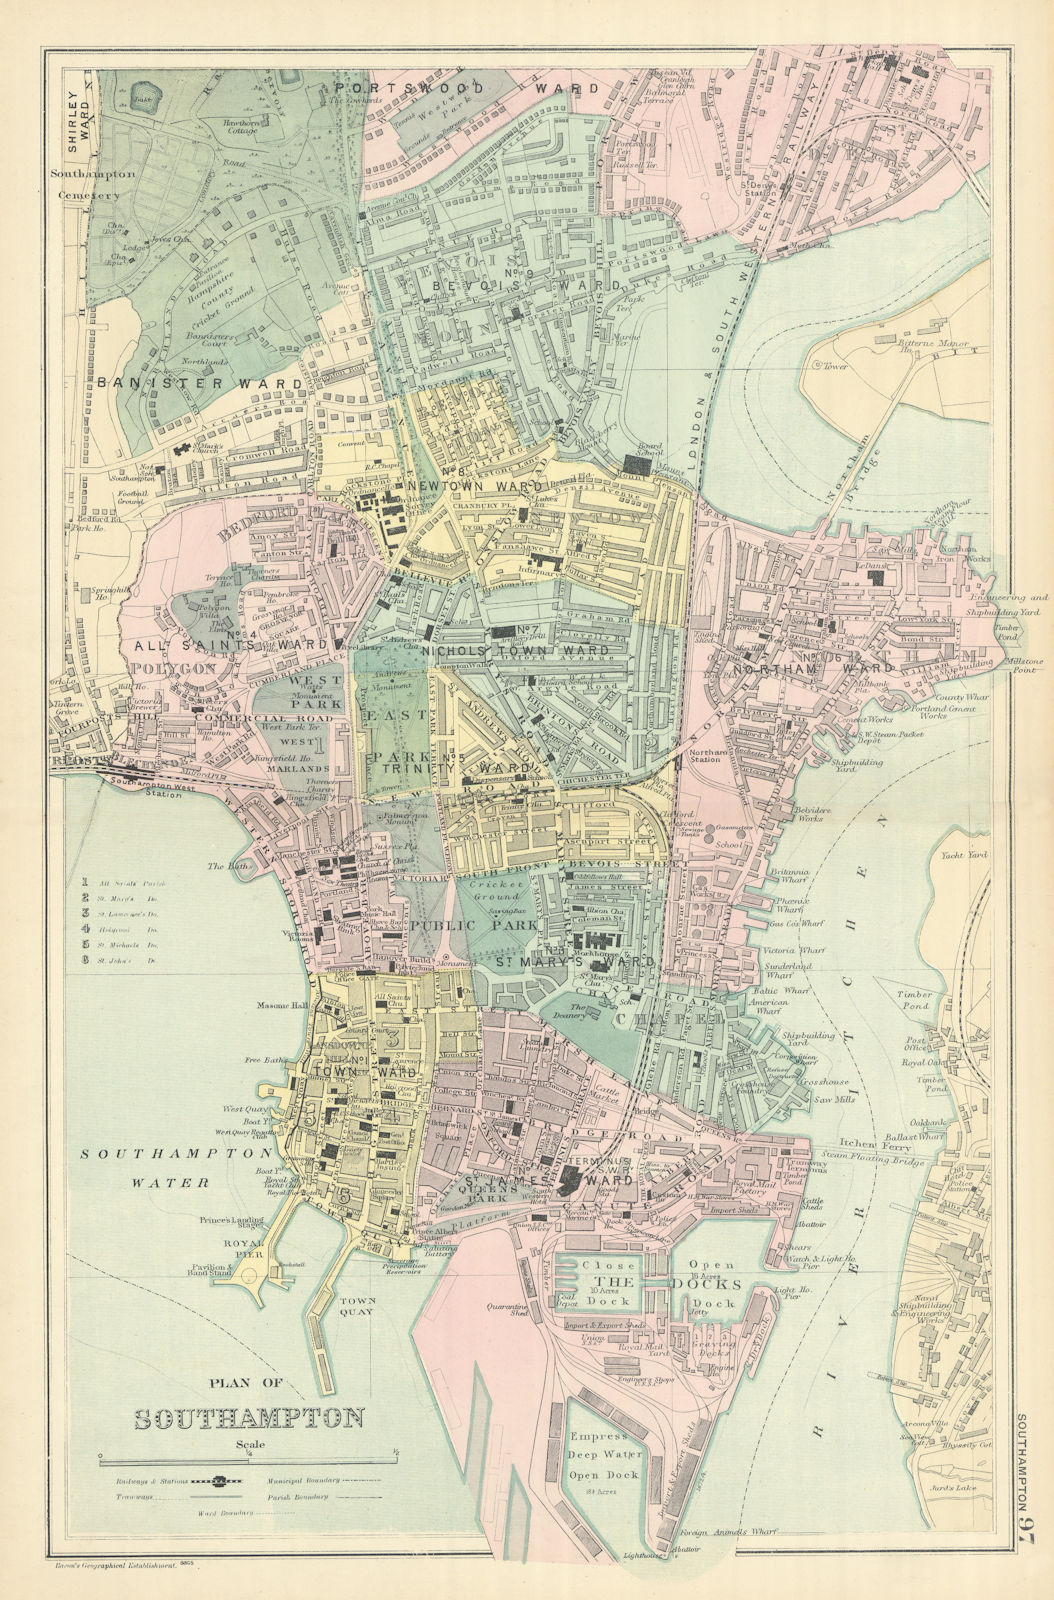 SOUTHAMPTON Bargate Bevois Portswood antique town city plan by GW BACON 1898 map